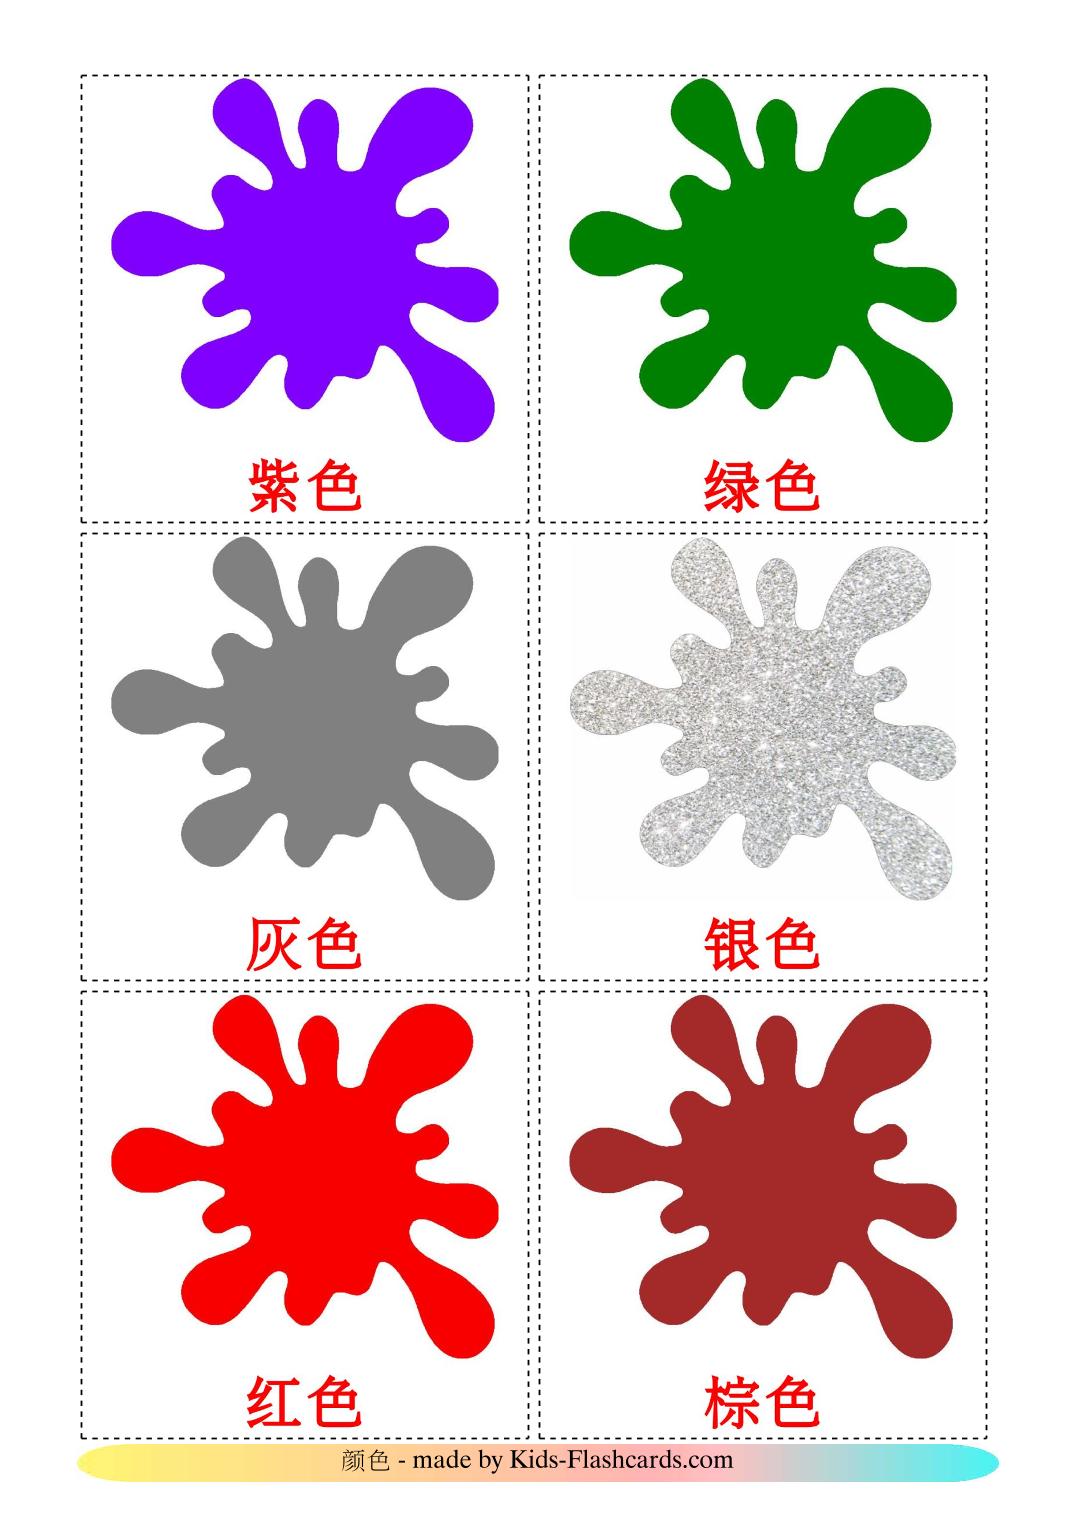 Colores - 12 fichas de chino(simplificado) para imprimir gratis 